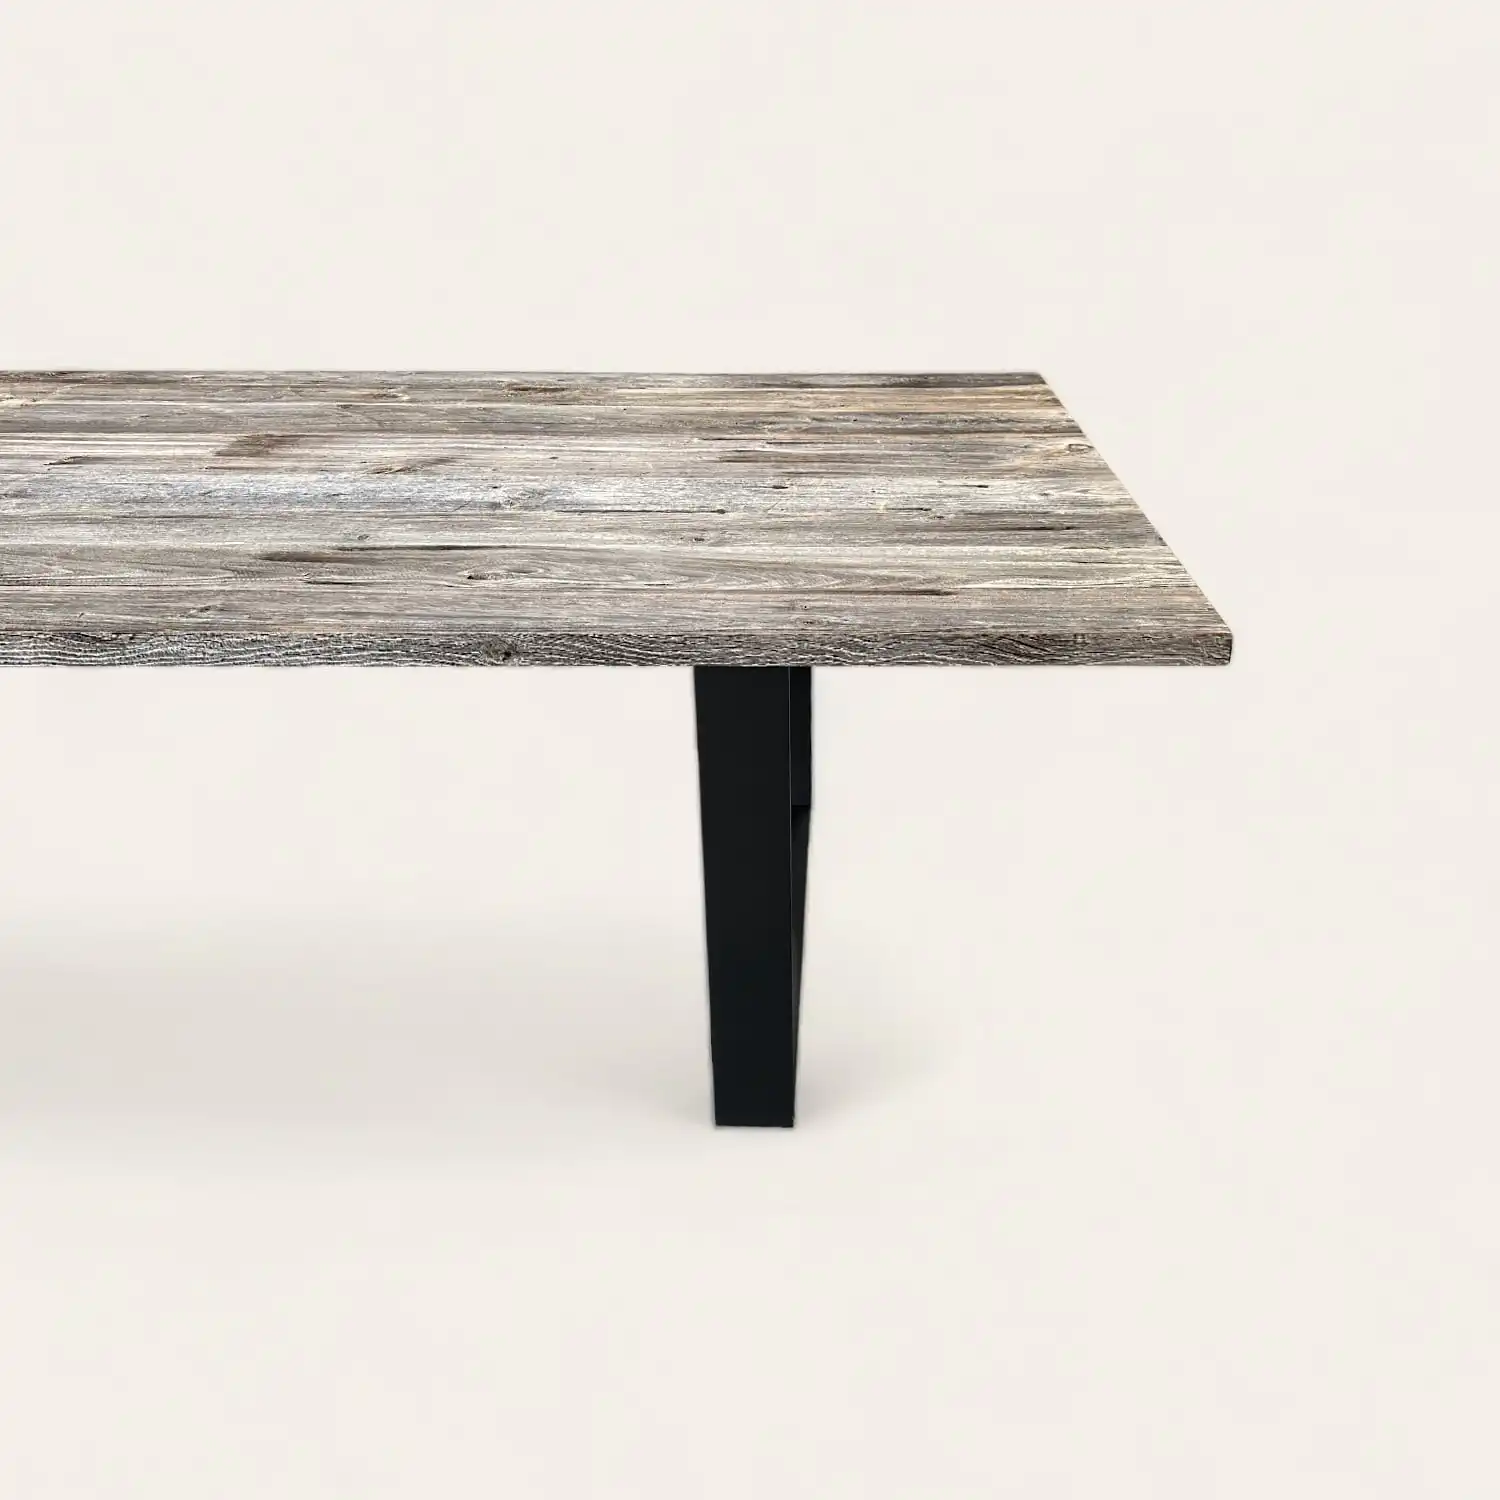  Une table en bois rustique avec des pieds noirs sur un fond blanc. 